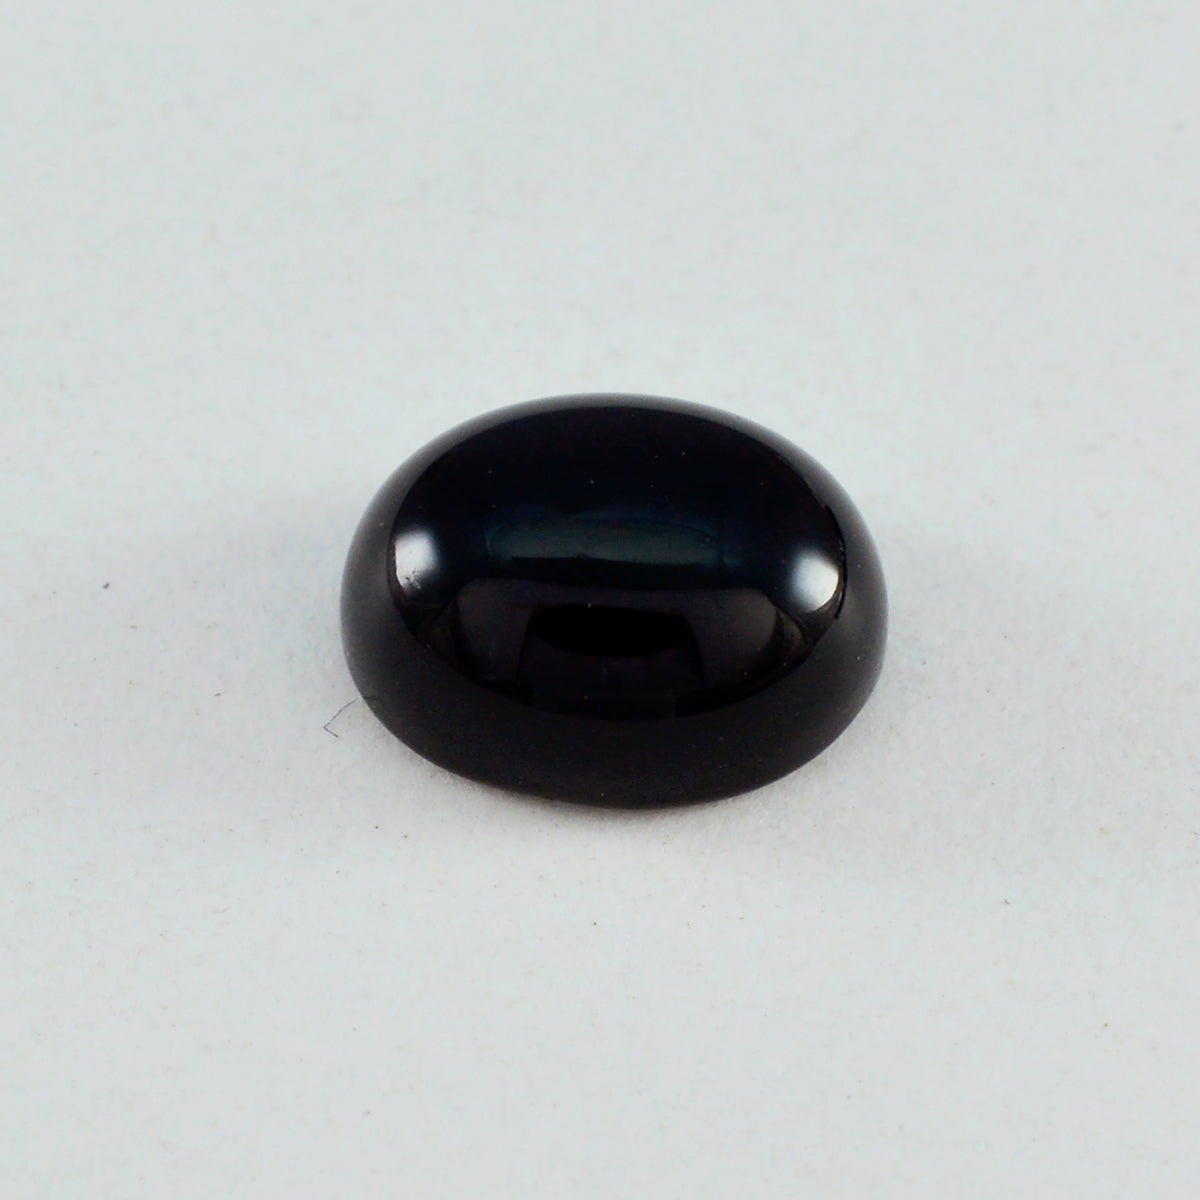 Riyogems 1 Stück schwarzer Onyx-Cabochon, 9 x 11 mm, ovale Form, hübscher, hochwertiger, loser Edelstein